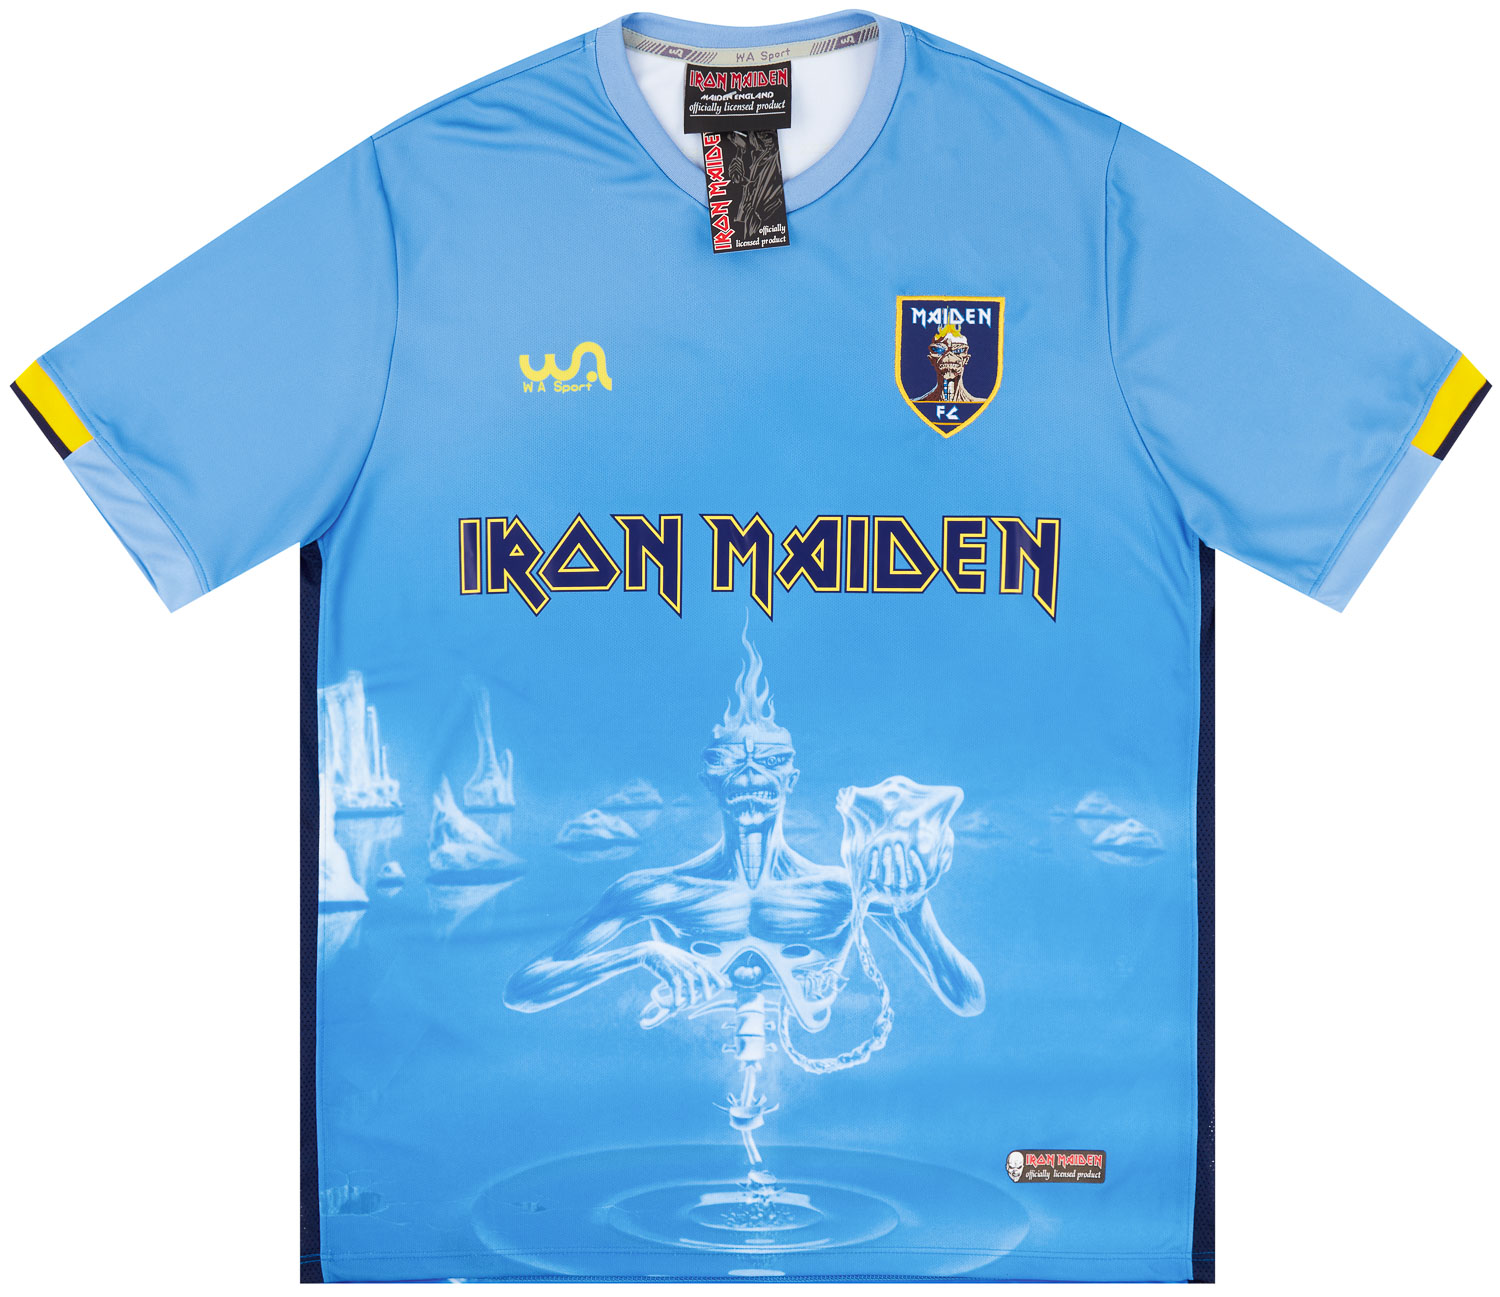 Iron Maiden 'Seventh Son of a Son' Shirt